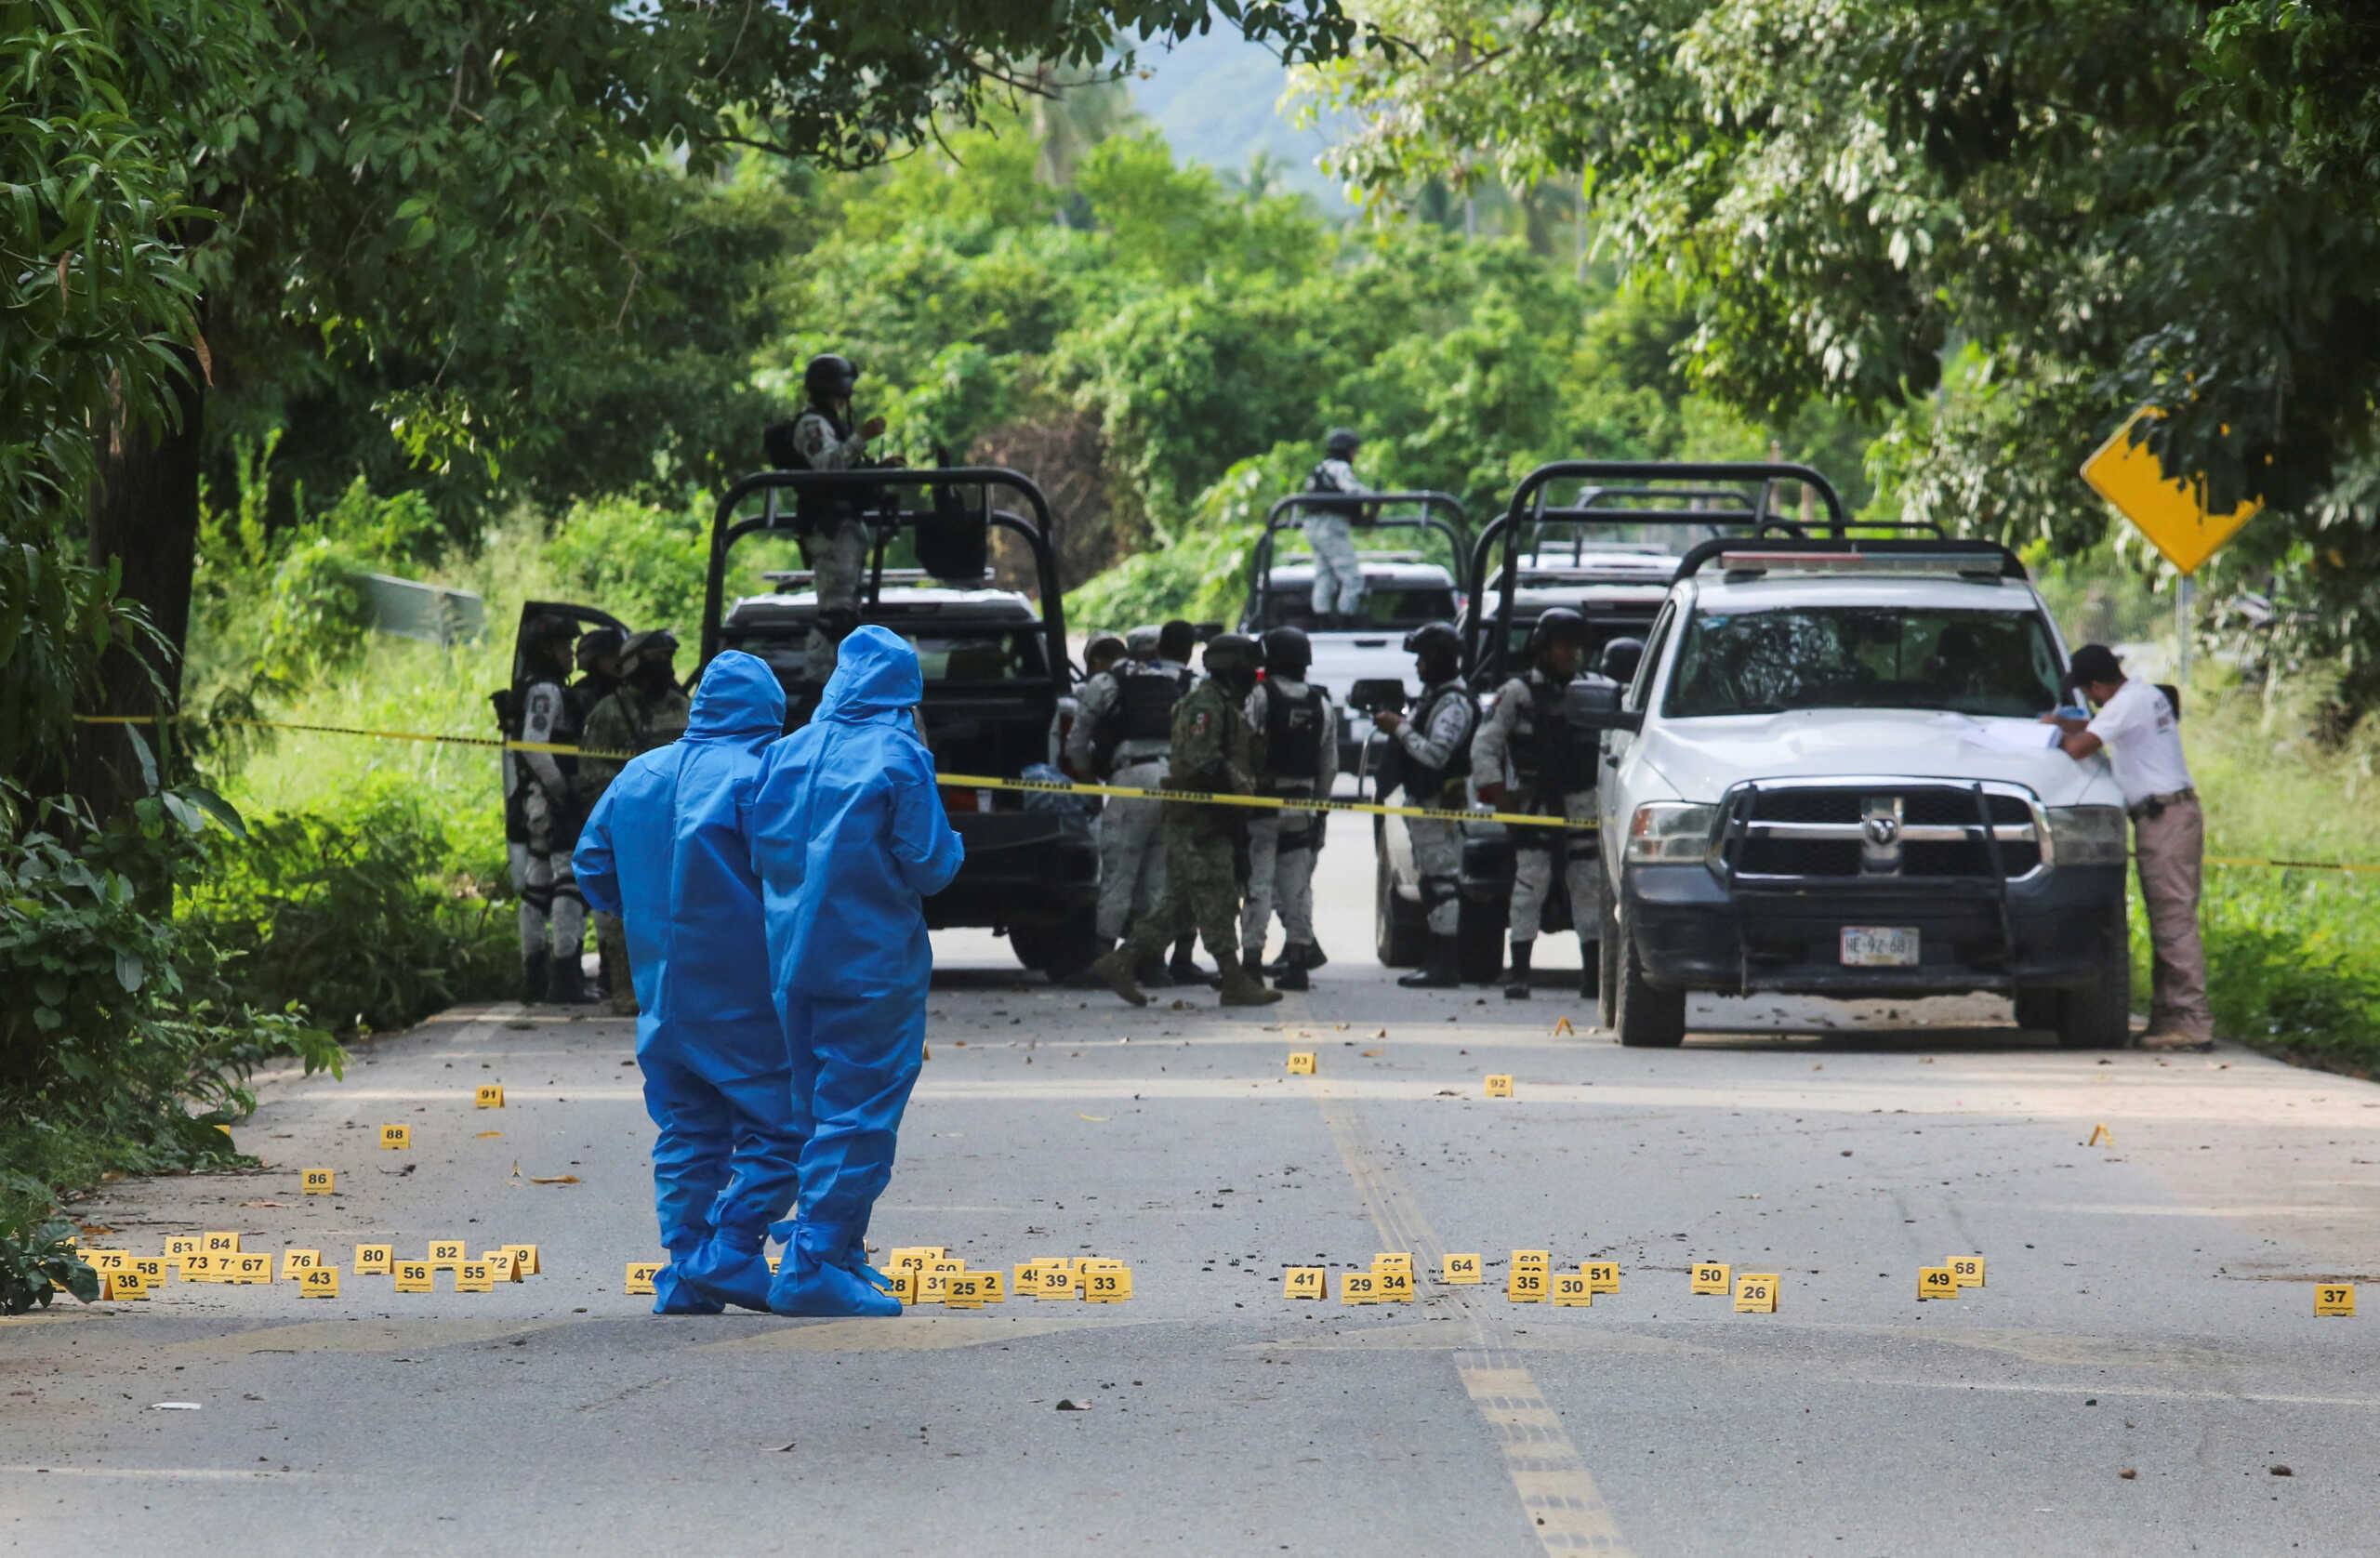 Μεξικό: Επιθέσεις ενόπλων σε 3 πολιτείες, τουλάχιστον 24 νεκροί – 10 αστυνομικοί ανάμεσά τους